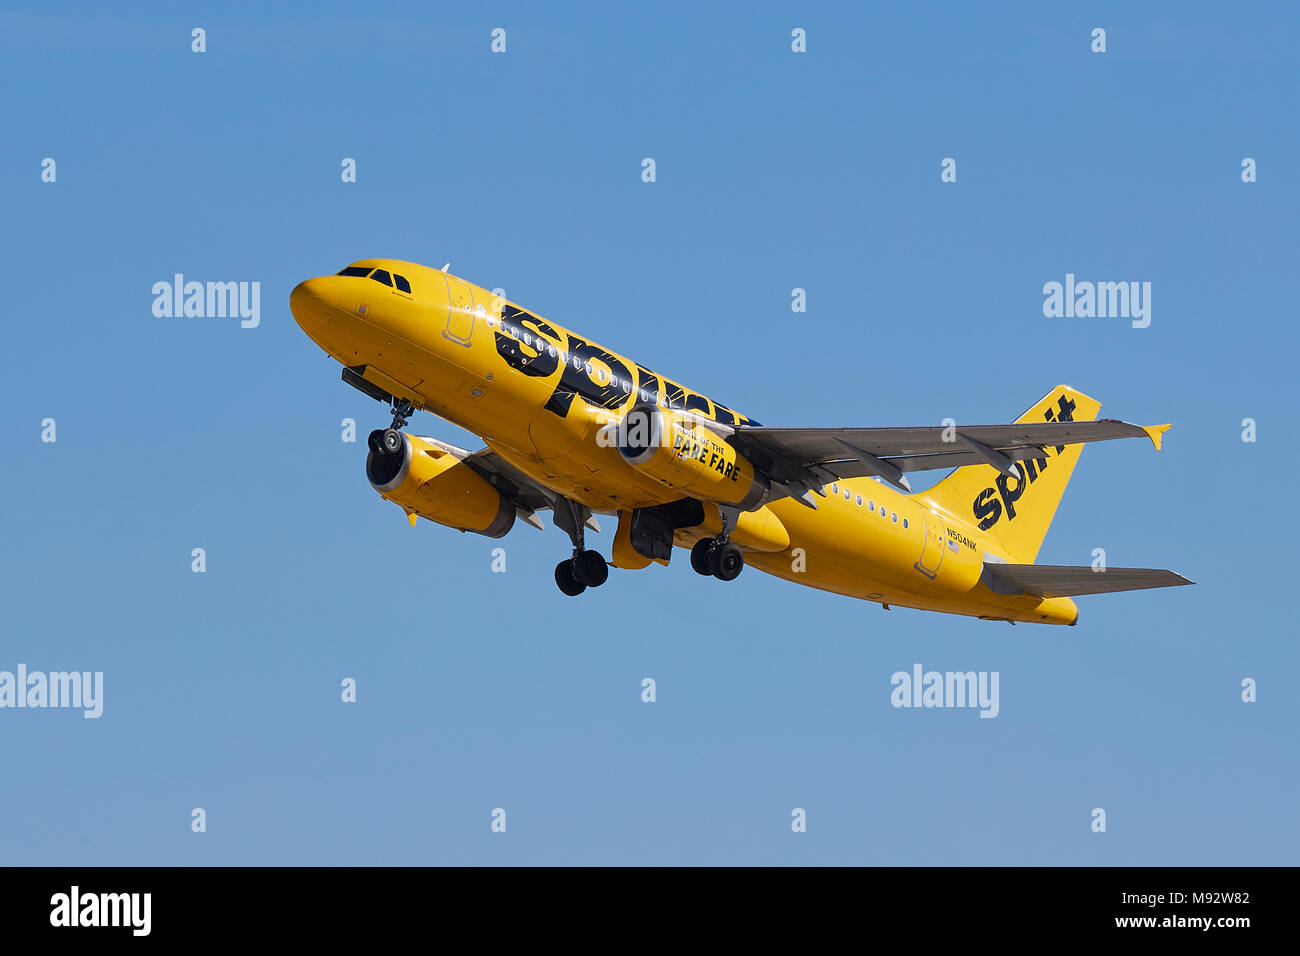 Spirito Airlines Airbus A319 jet del passeggero nella luminosa livrea gialla, decollo dall'Aeroporto Internazionale di Los Angeles LAX, California, Stati Uniti d'America. Foto Stock